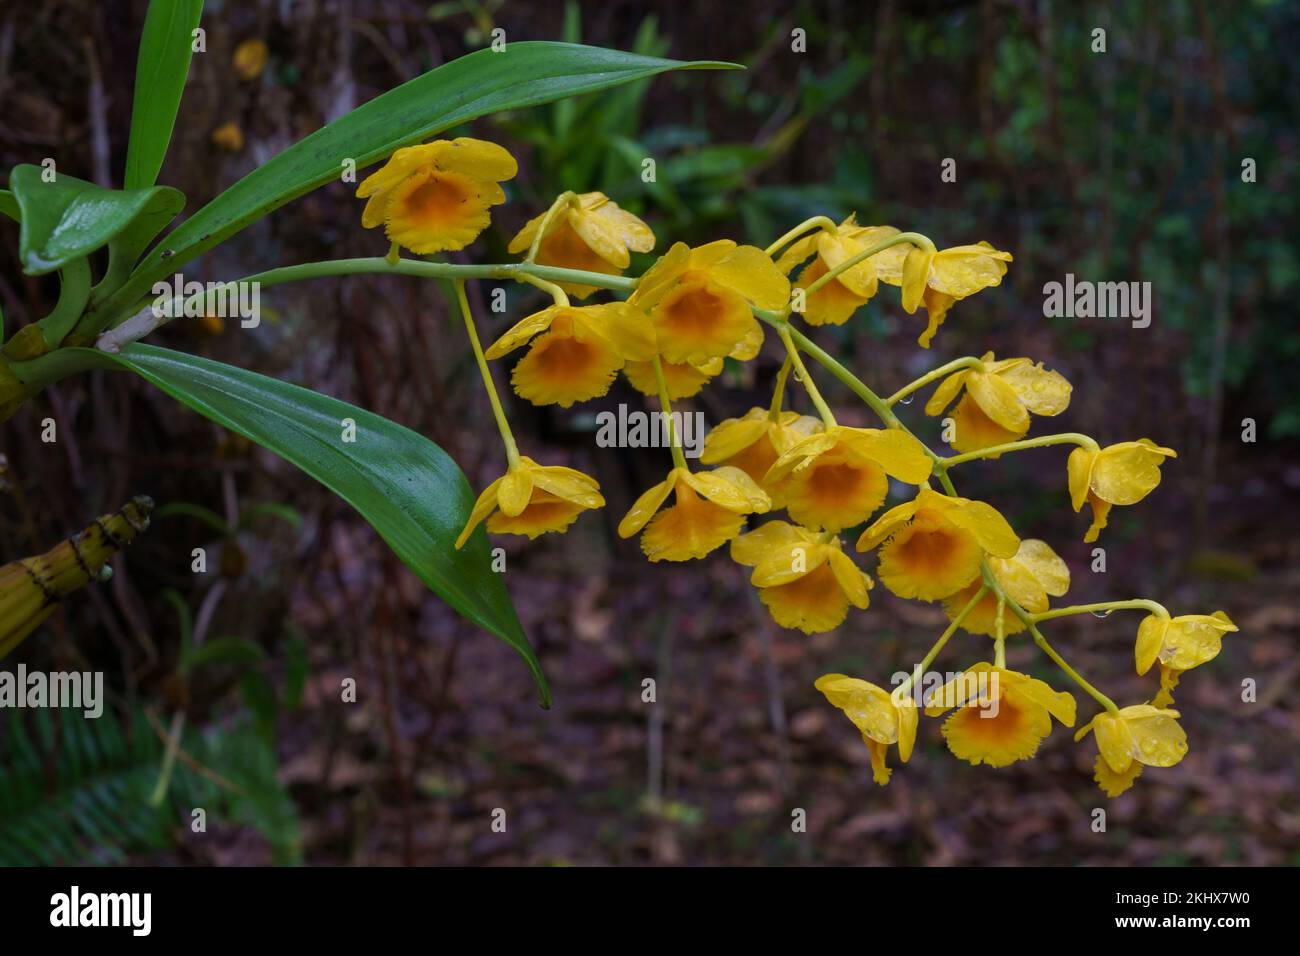 Gros plan sur le groupe de fleurs jaune et orange de l'espèce tropicale d'orchidée épiphytique dendrobium chrysotoxum en plein air sur fond naturel Banque D'Images